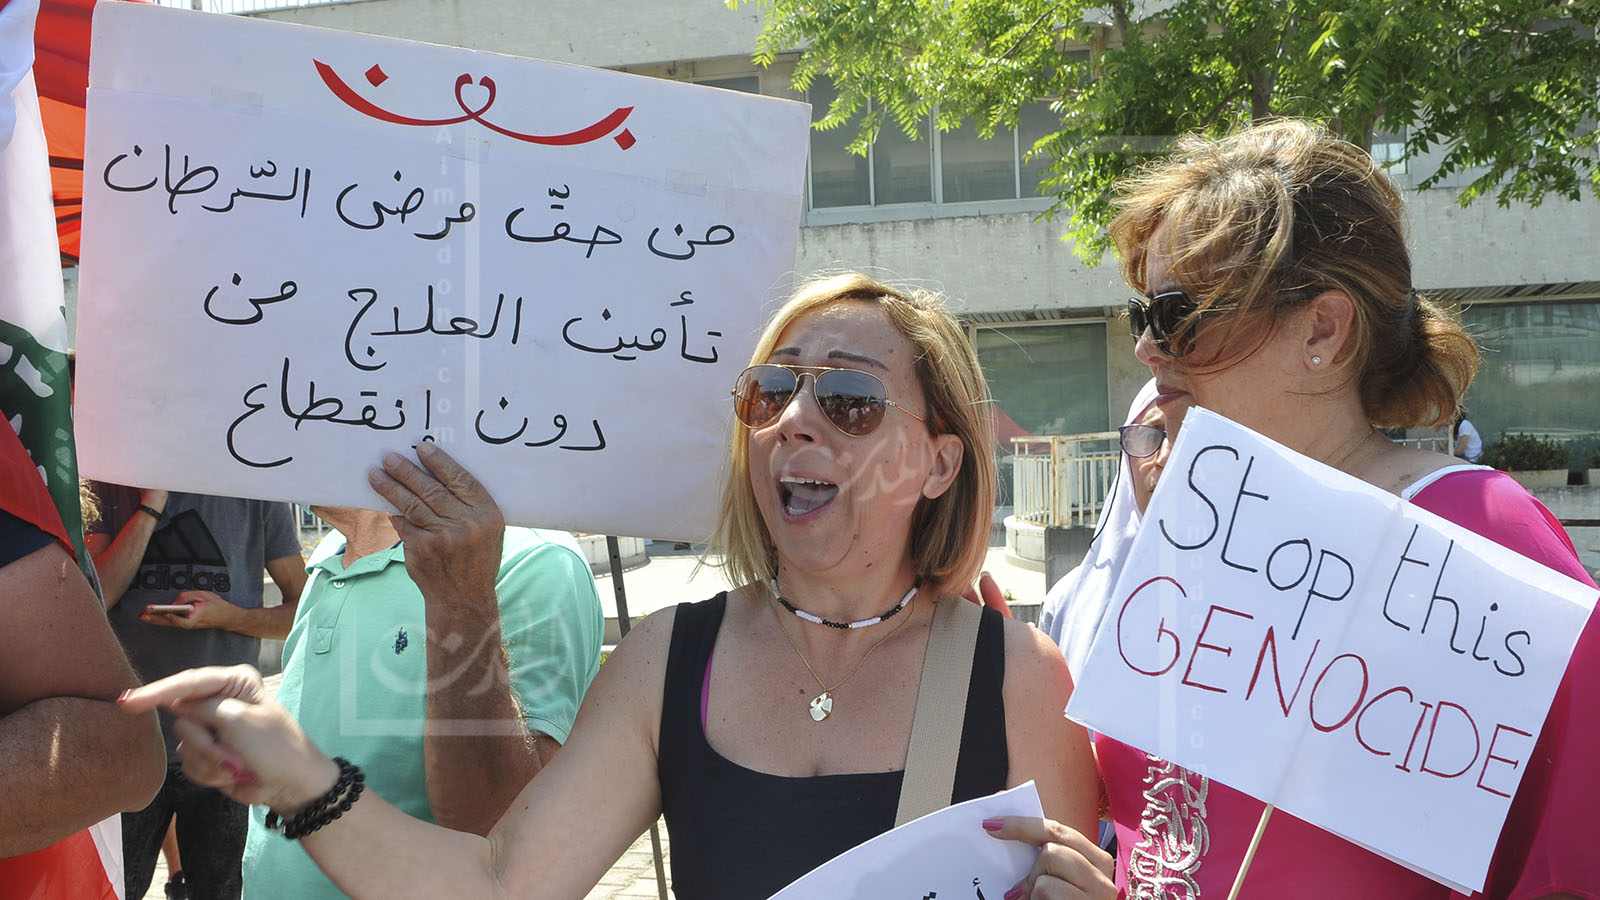 سرطان اللبنانيين: أدويةُ الهبة الأميركية فُقدت والوزير يفتح تحقيقاً